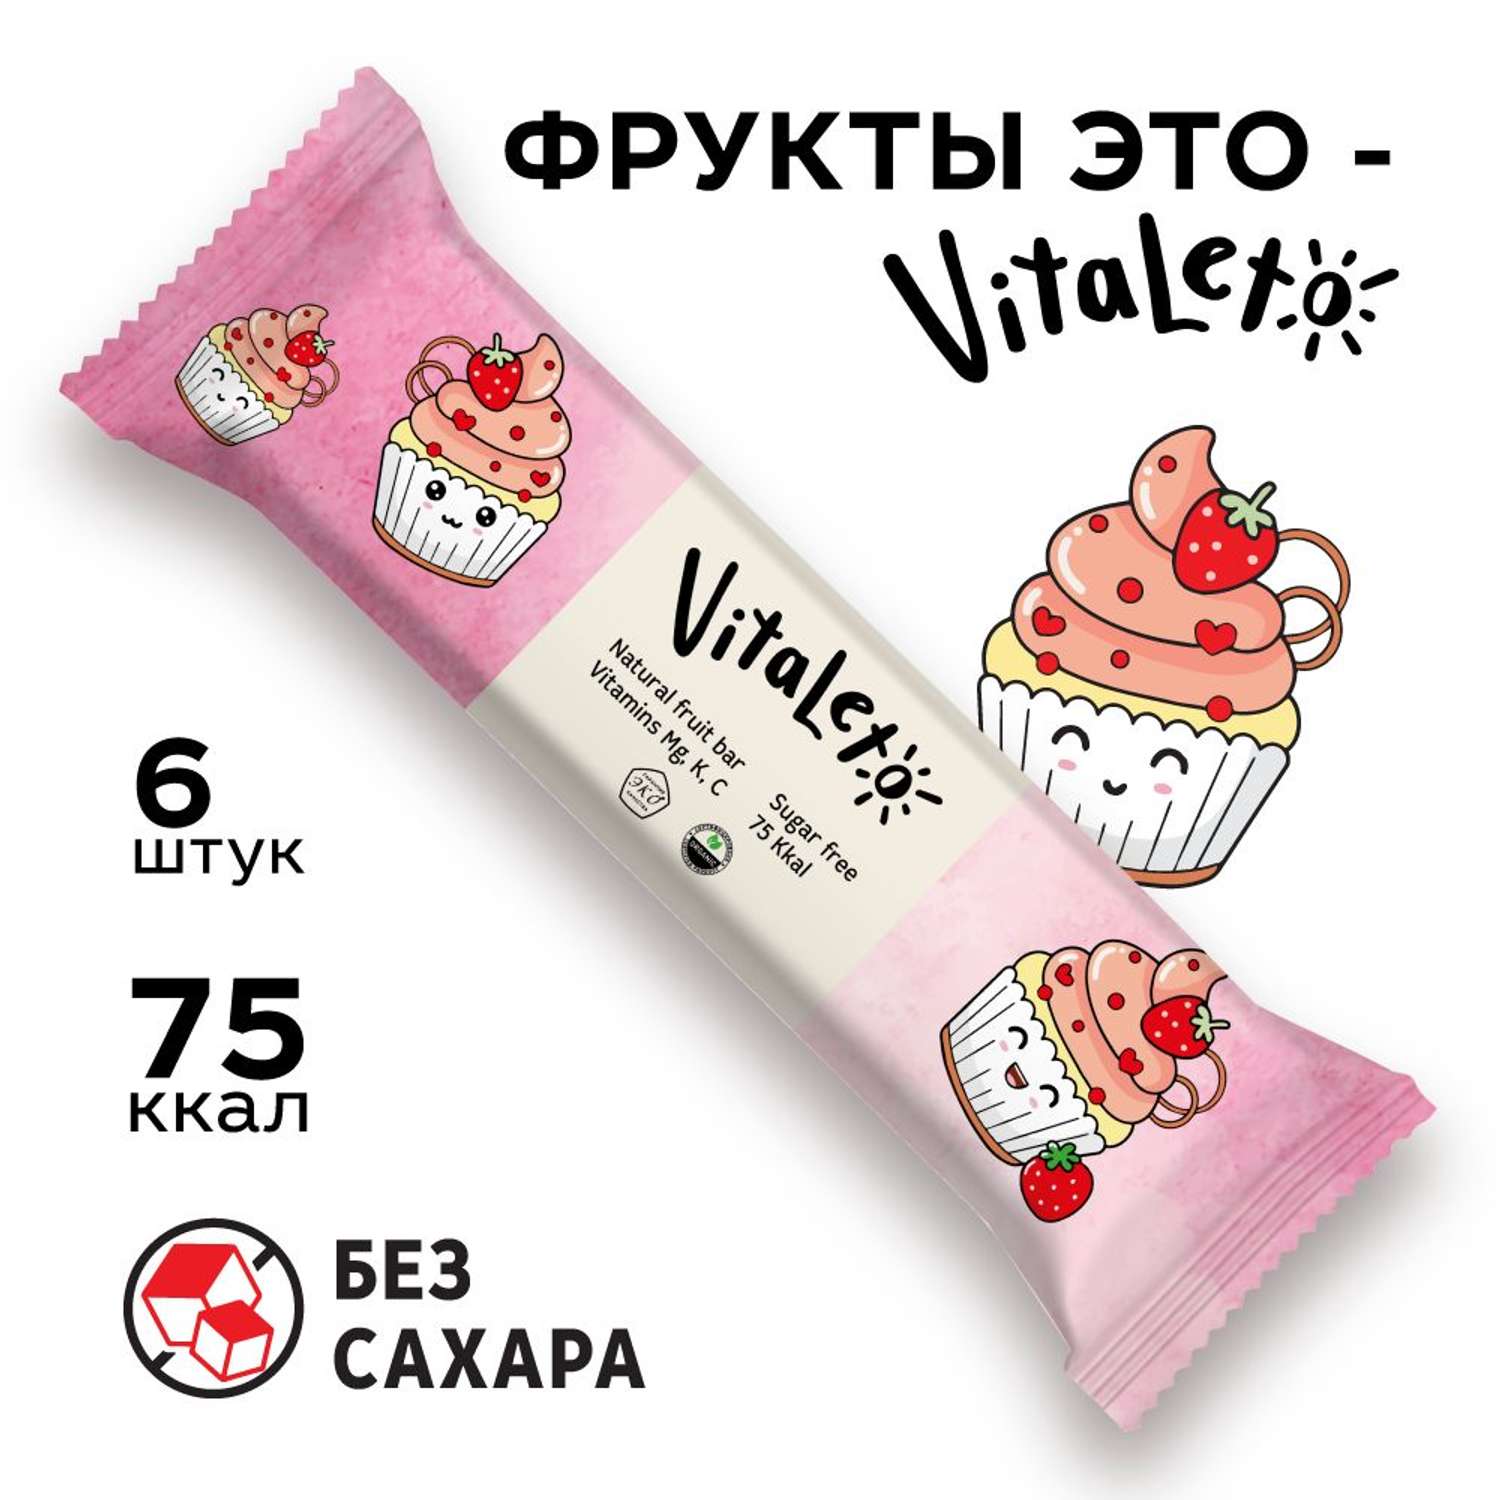 Фруктовый злаковый VitaLeto Клубничный десерт 6 шт х 30гр - фото 1